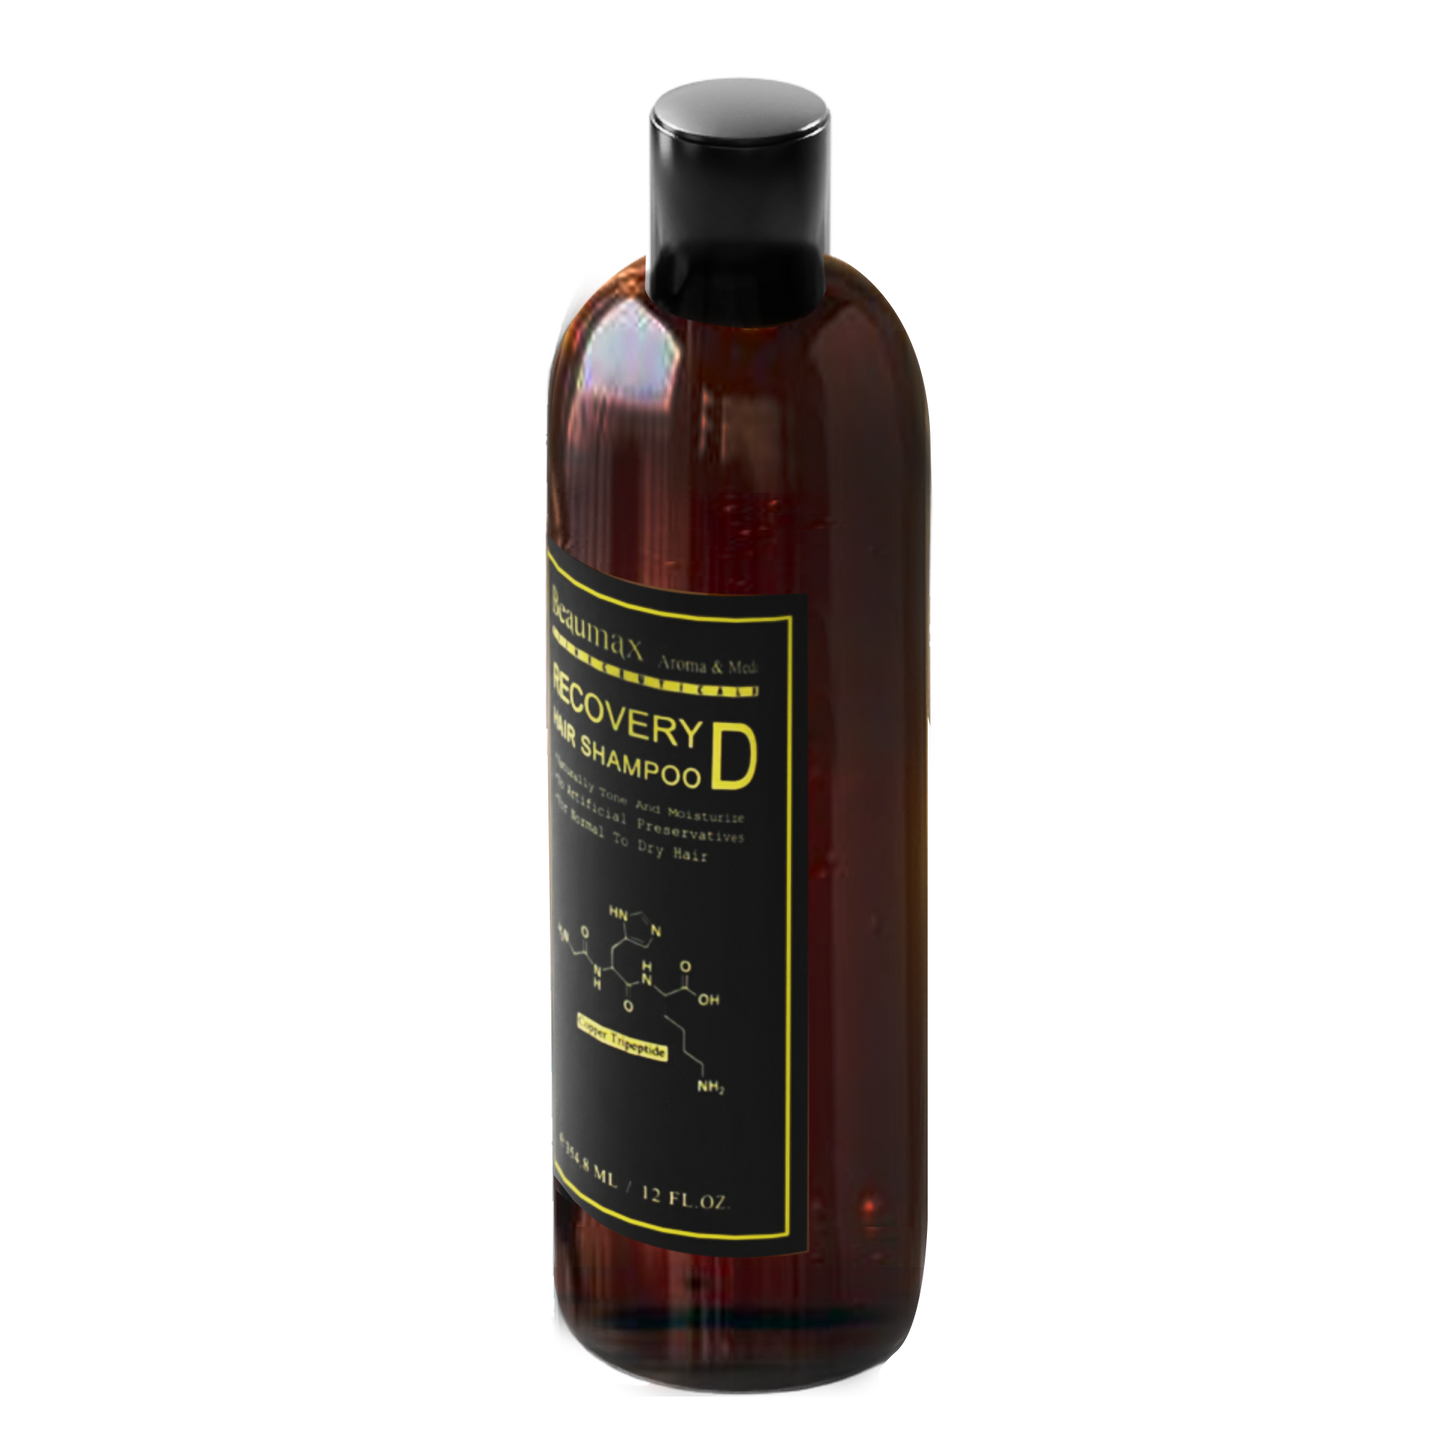 Recovery Hair Shampoo D 354.8ml/12fl.oz.